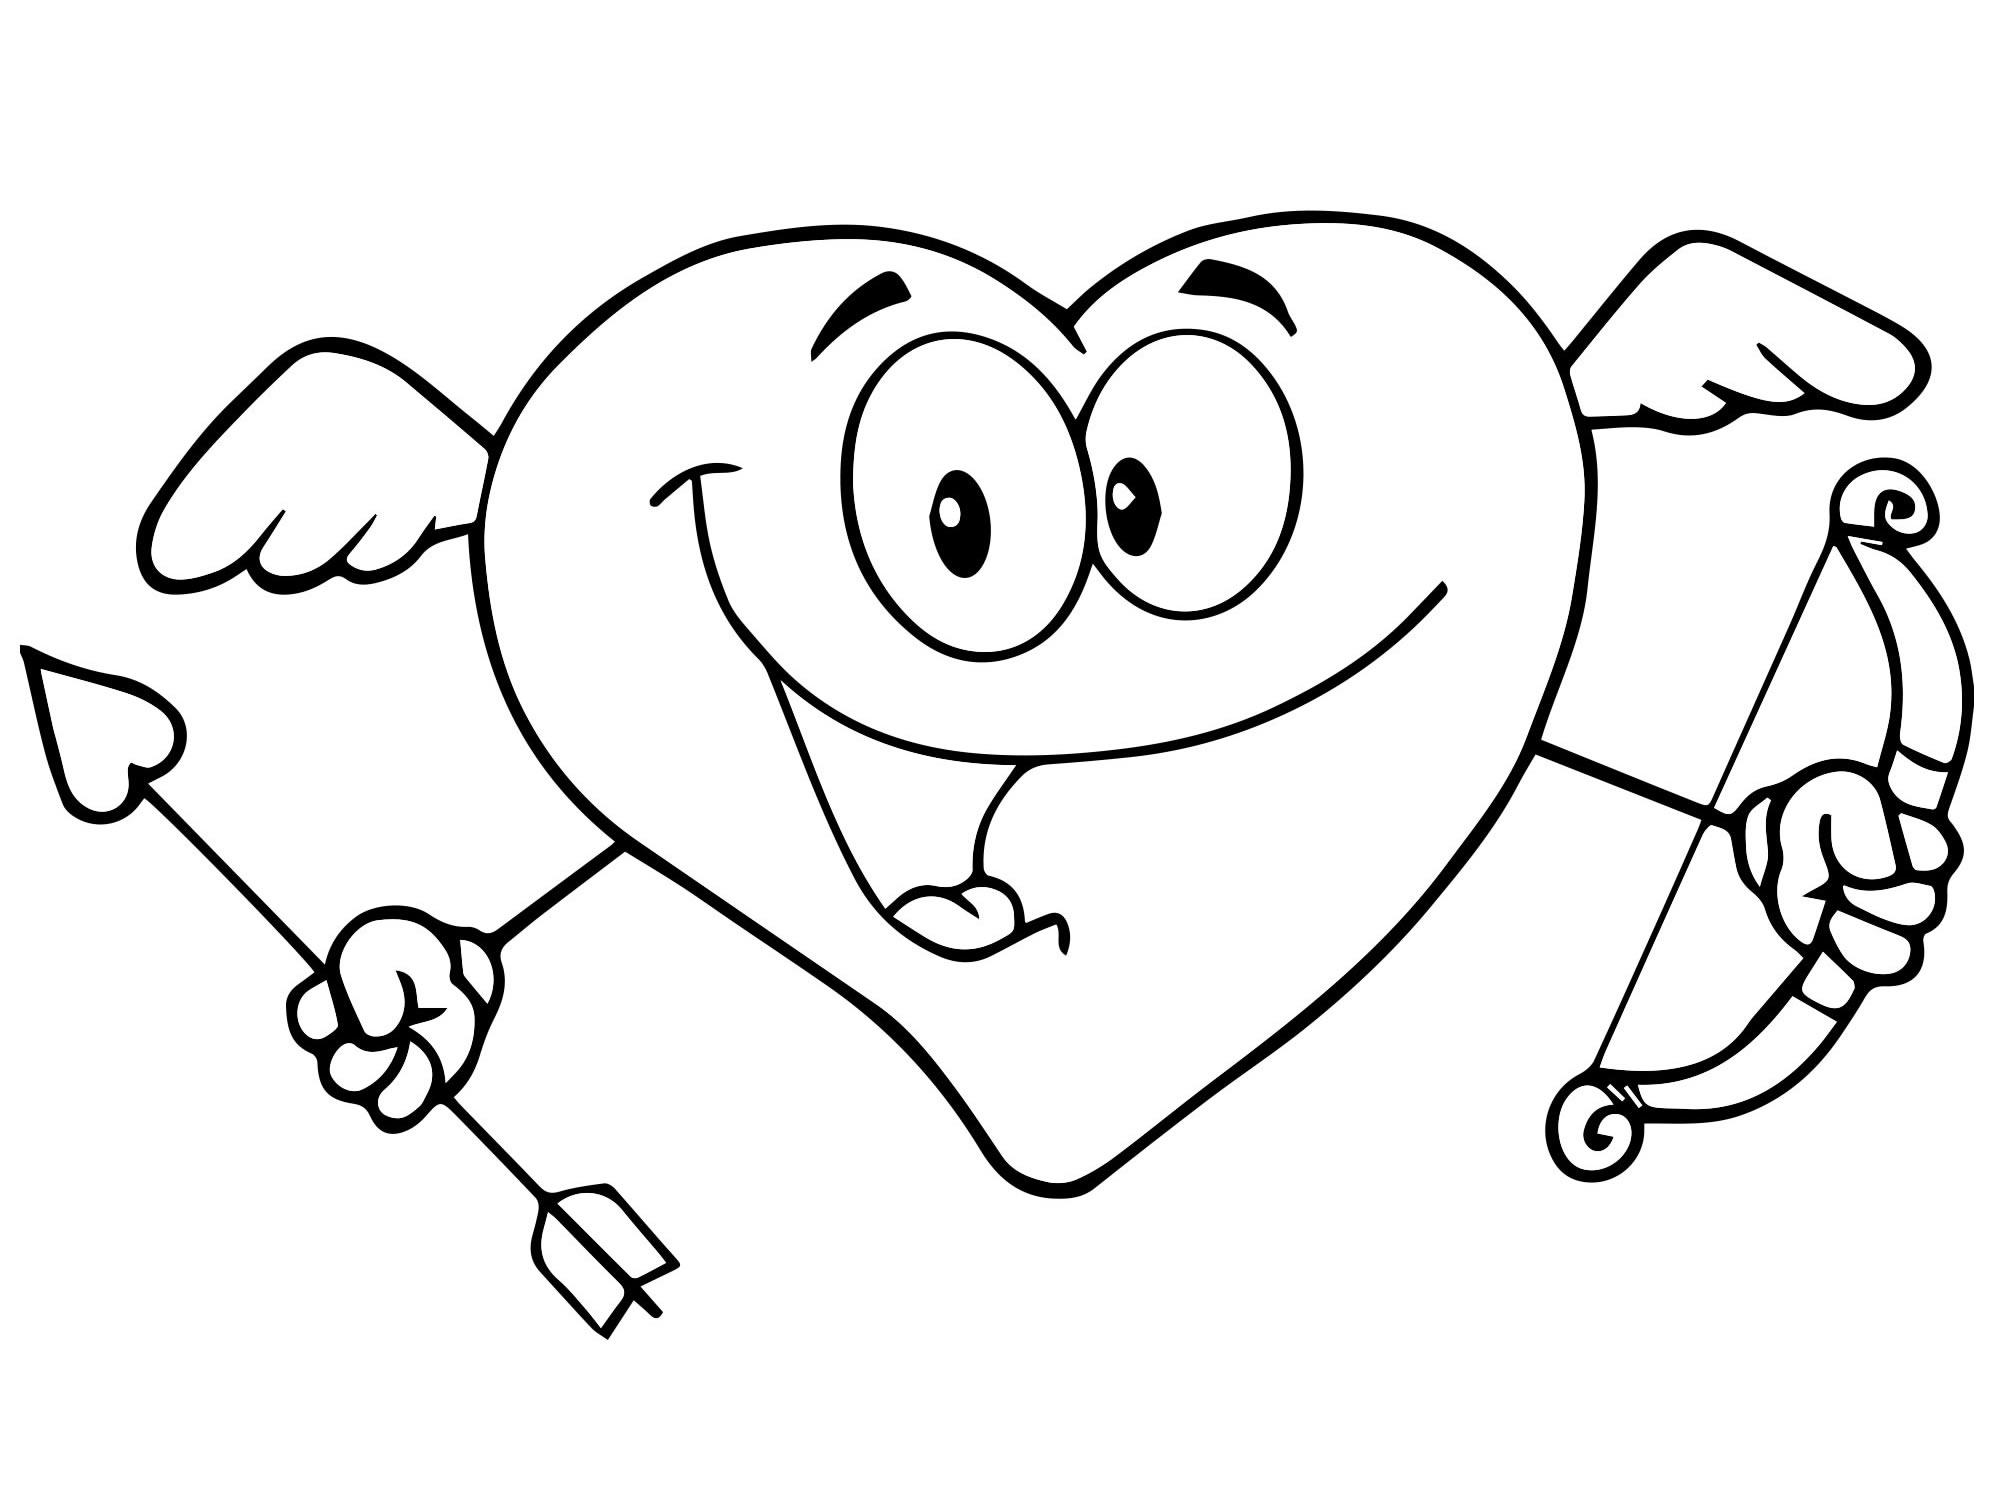 Сердце с крыльями раскраска для детей